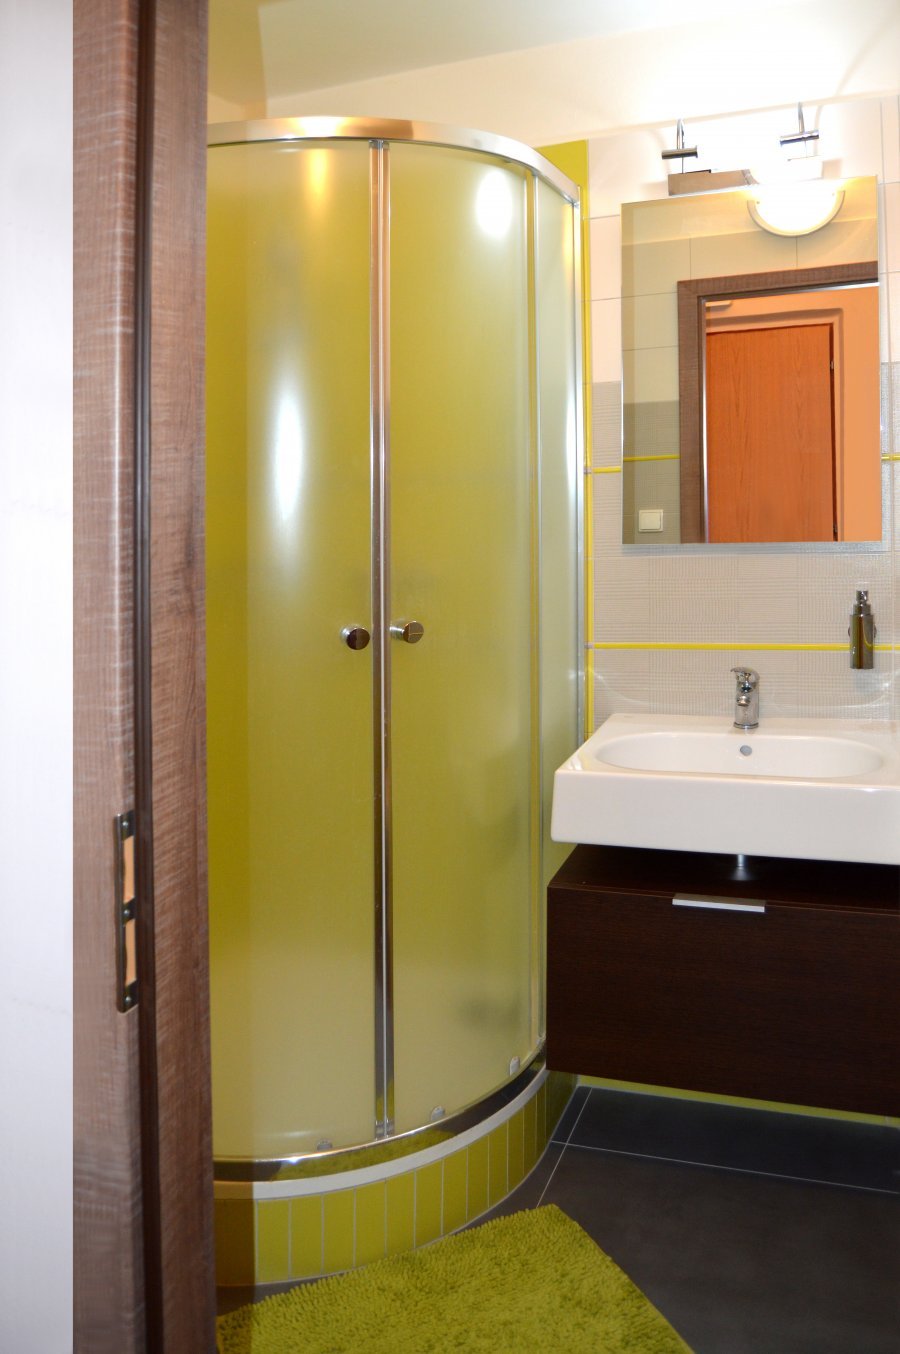 Barevnou kombinací zelené, šedé a hnědé vytvoříte svěží, moderní a zároveň útulný prostor | Rekonstrukce koupelny Hradec Králové